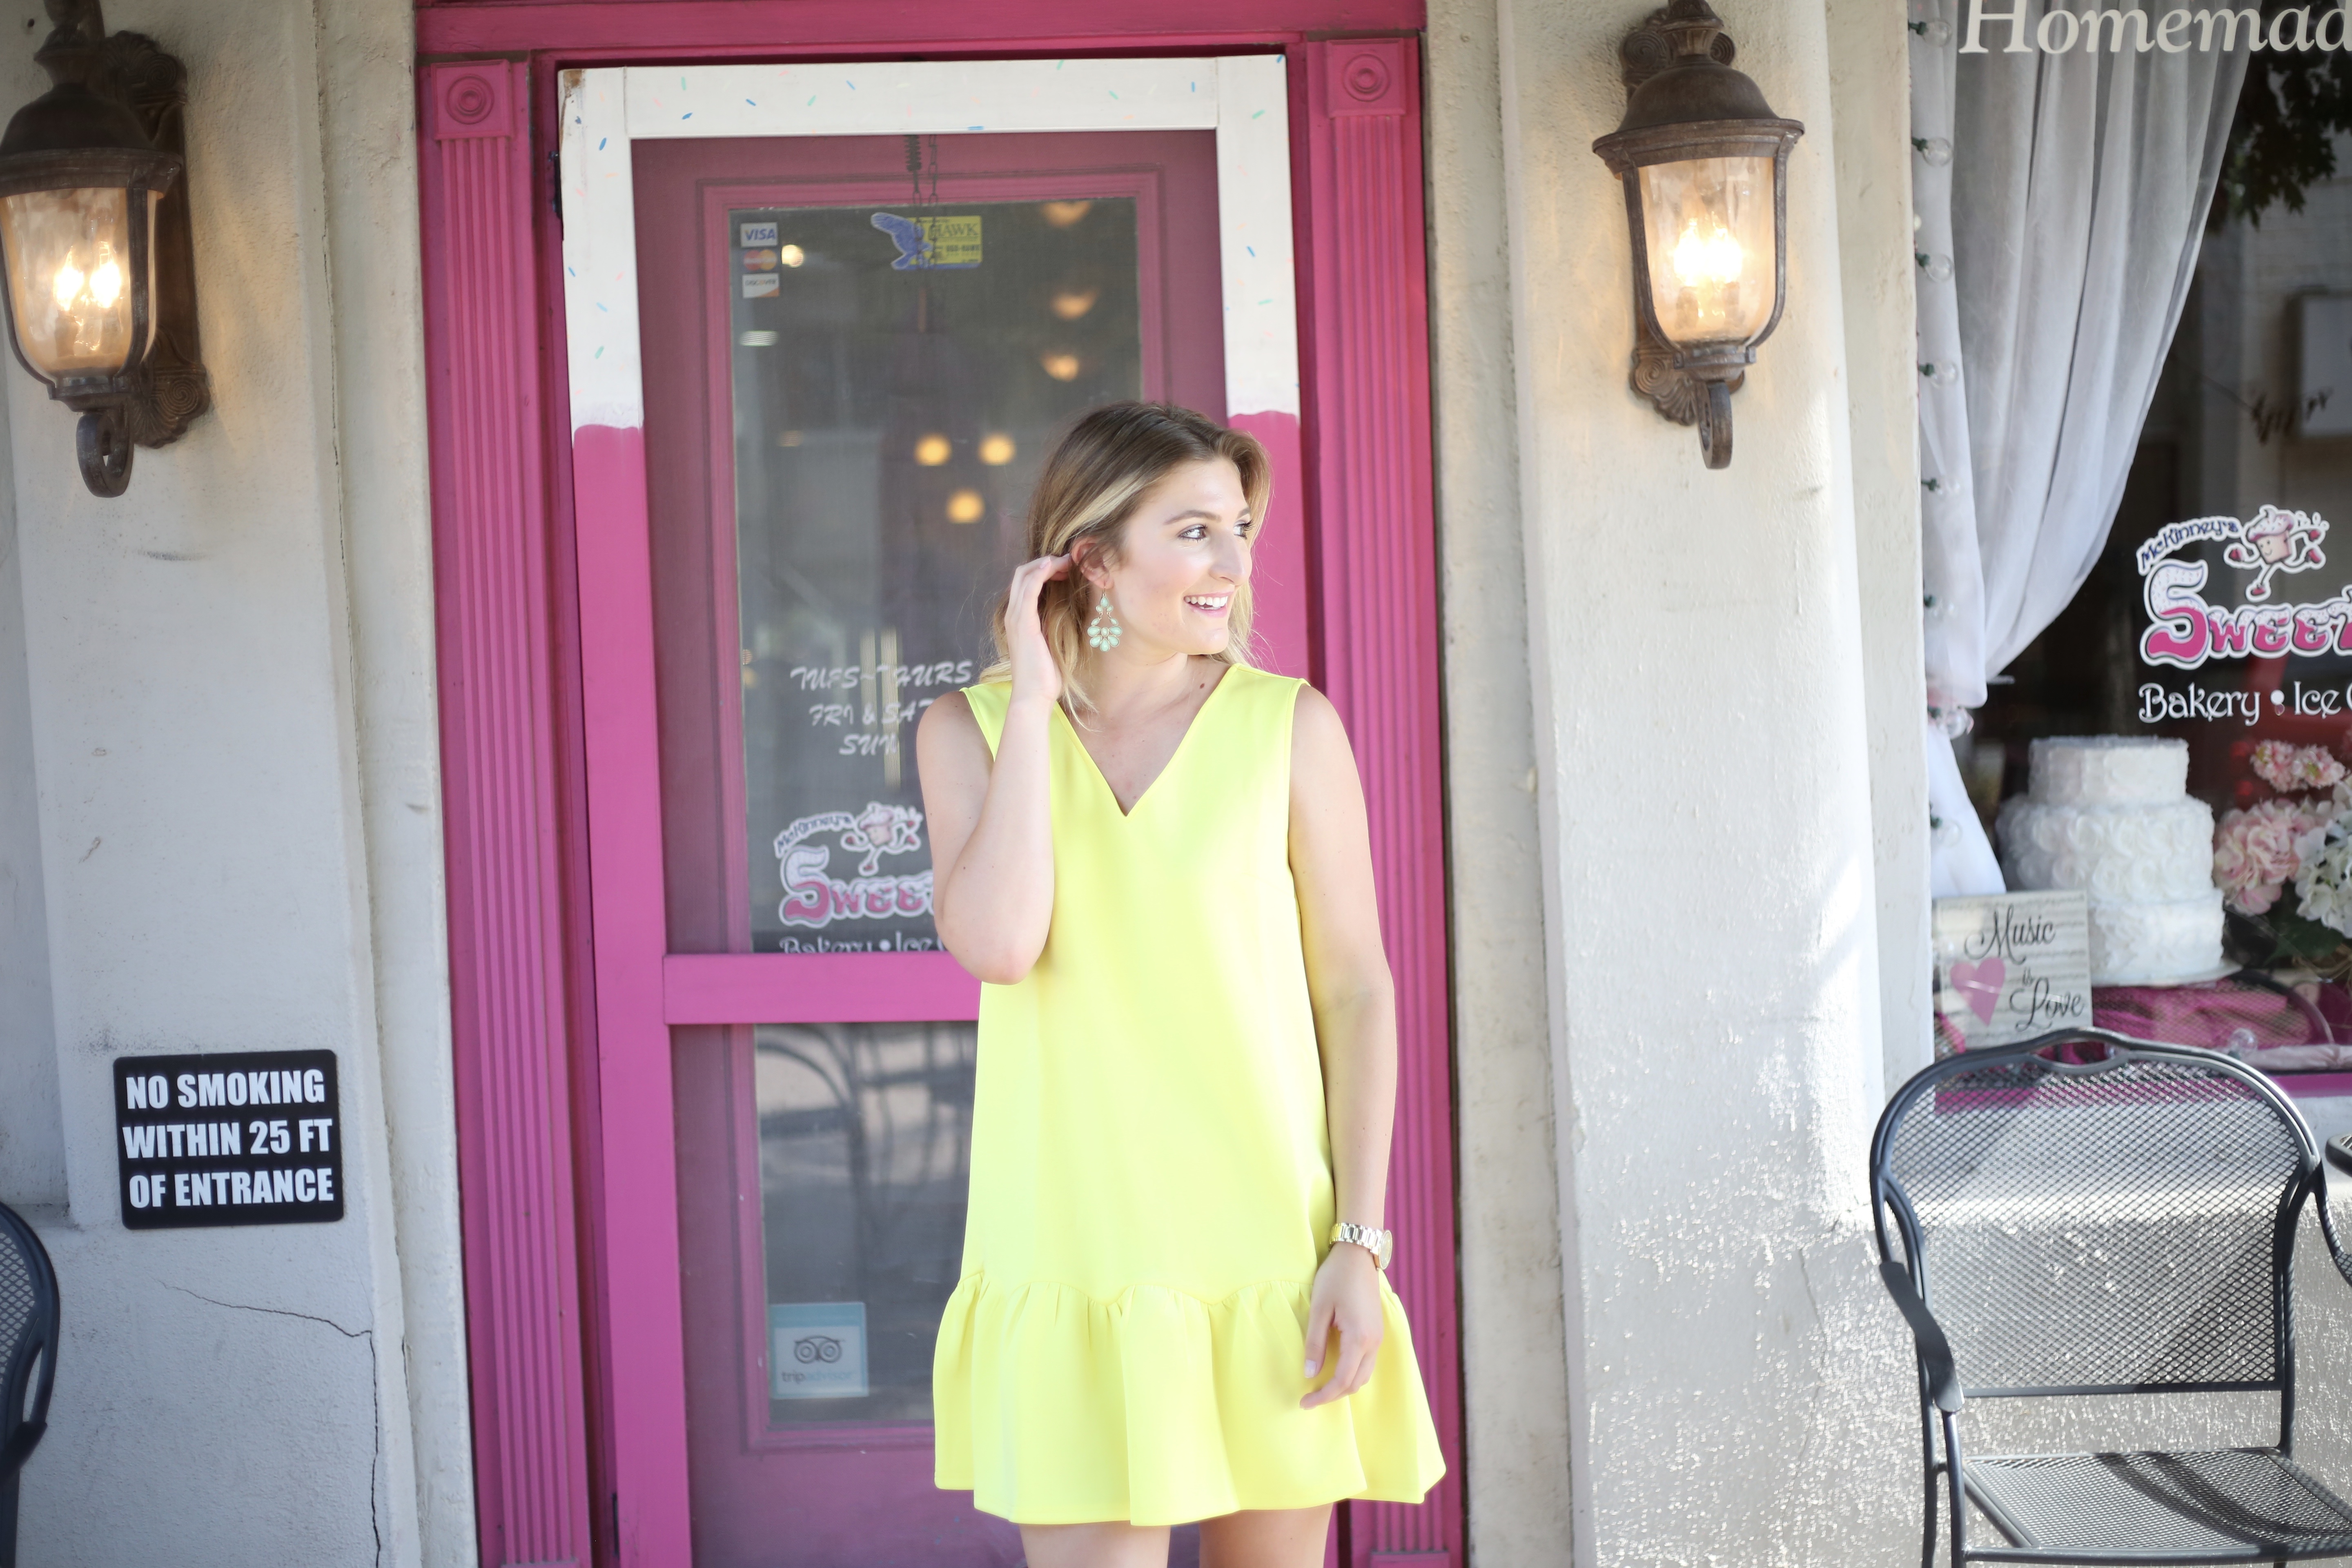 Affordable 'Sunshine' Dress | AMS Blog